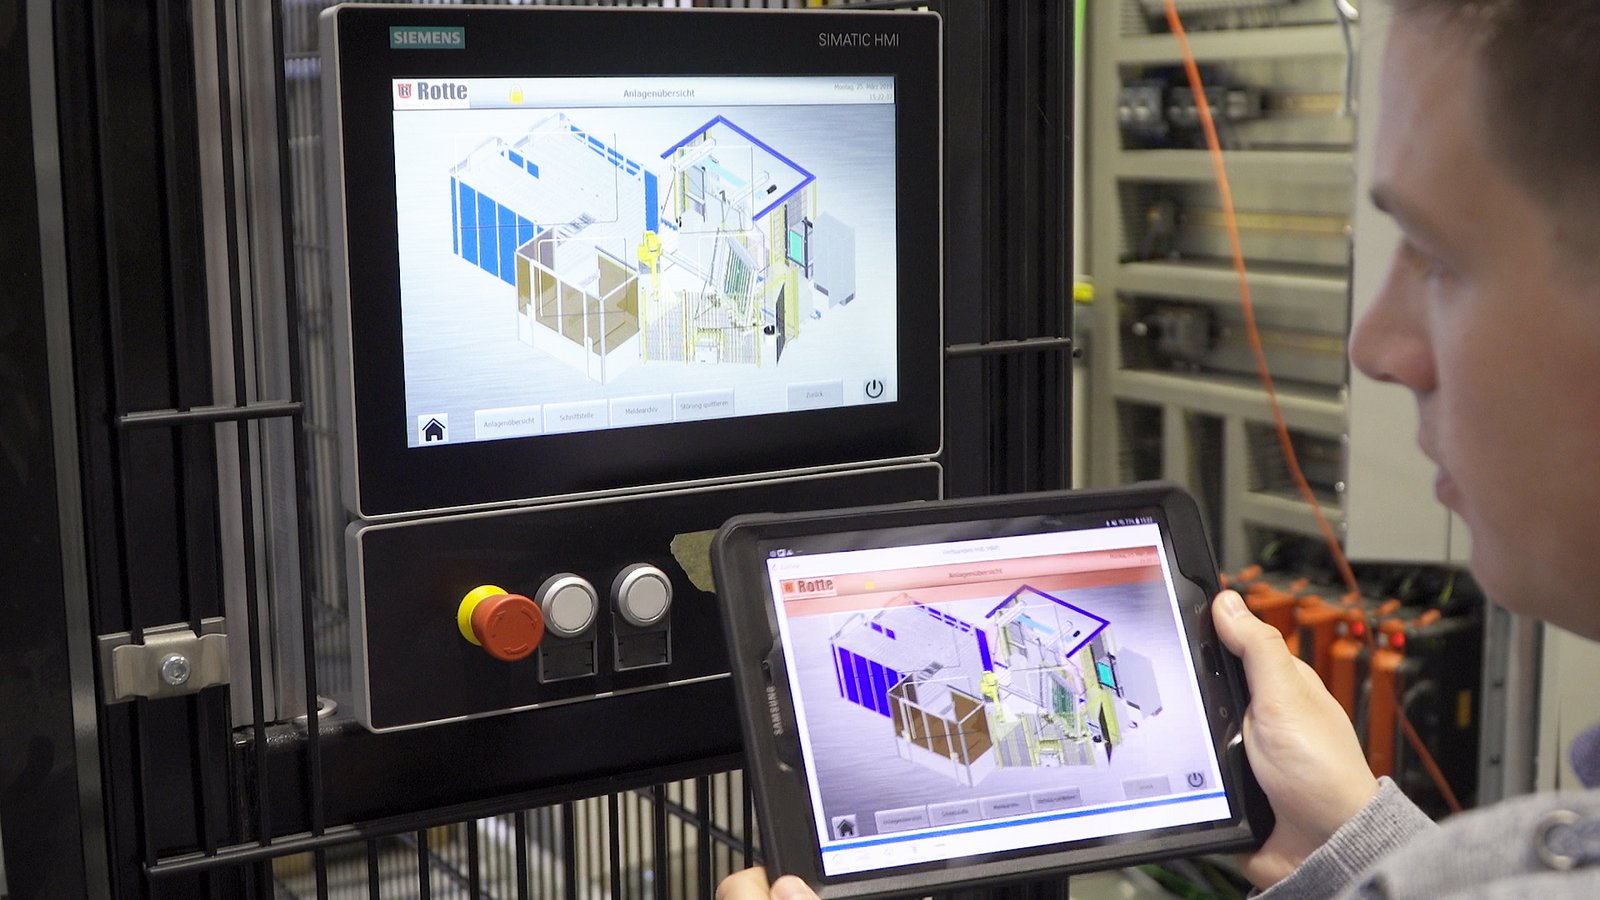 Auch die Rotte Smart-Factory-Plattform unterstützt Kunden in ihrer Produktion und sorgt für mehr Transparenz und Effizienz.